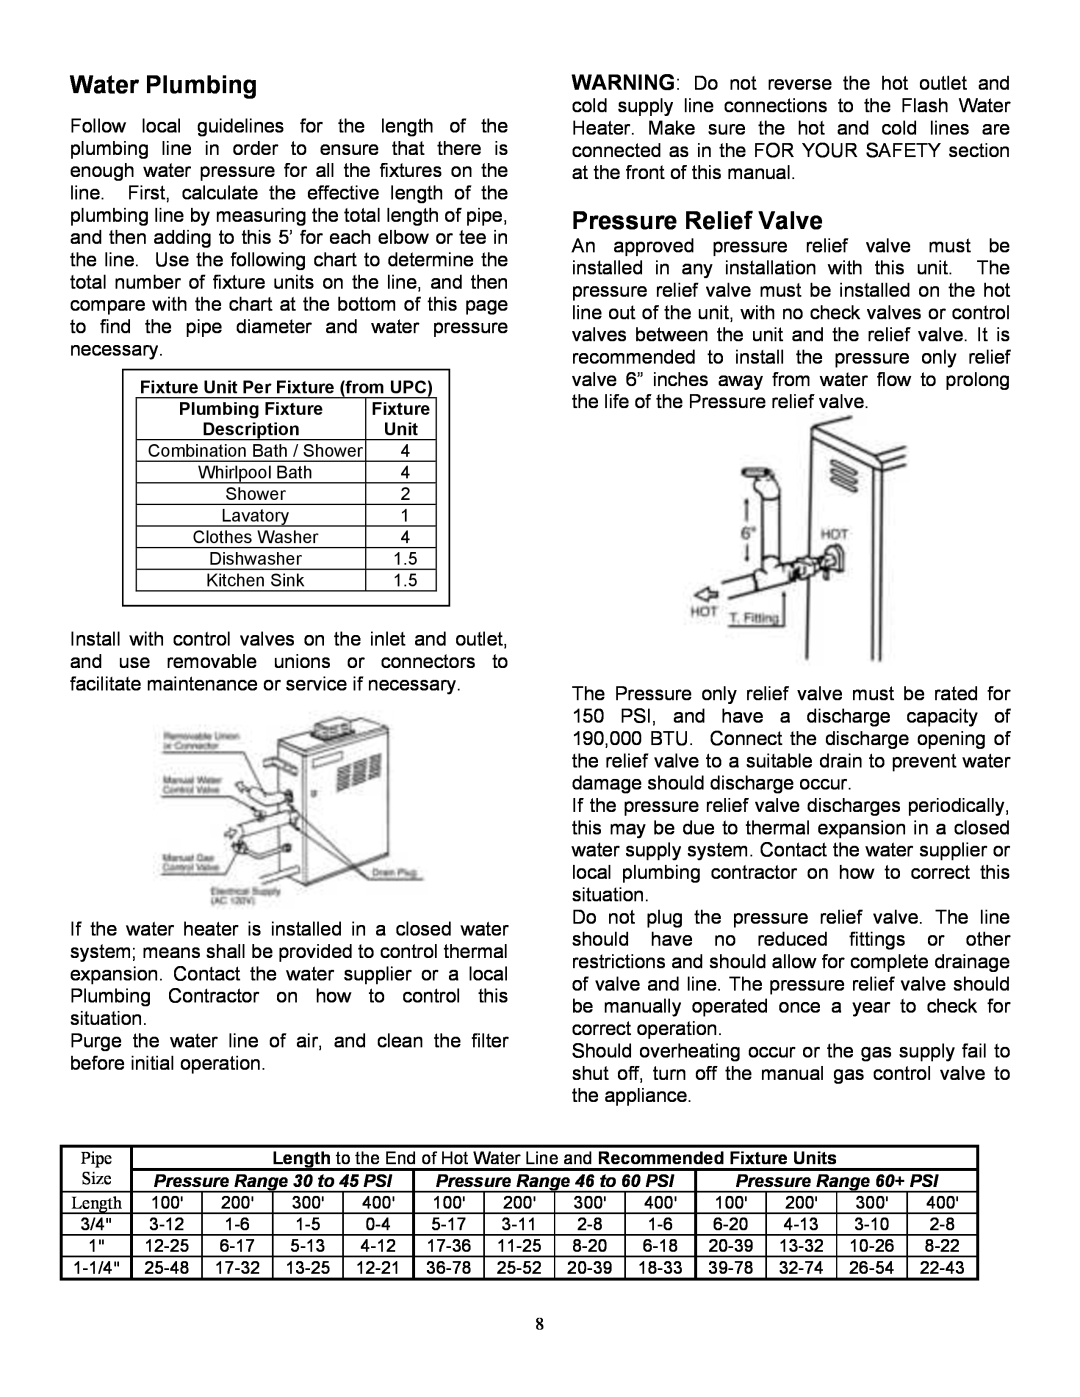 Whirlpool T-K1S Water Plumbing, Pressure Relief Valve, Fixture Unit Per Fixture from UPC, Plumbing Fixture, Description 